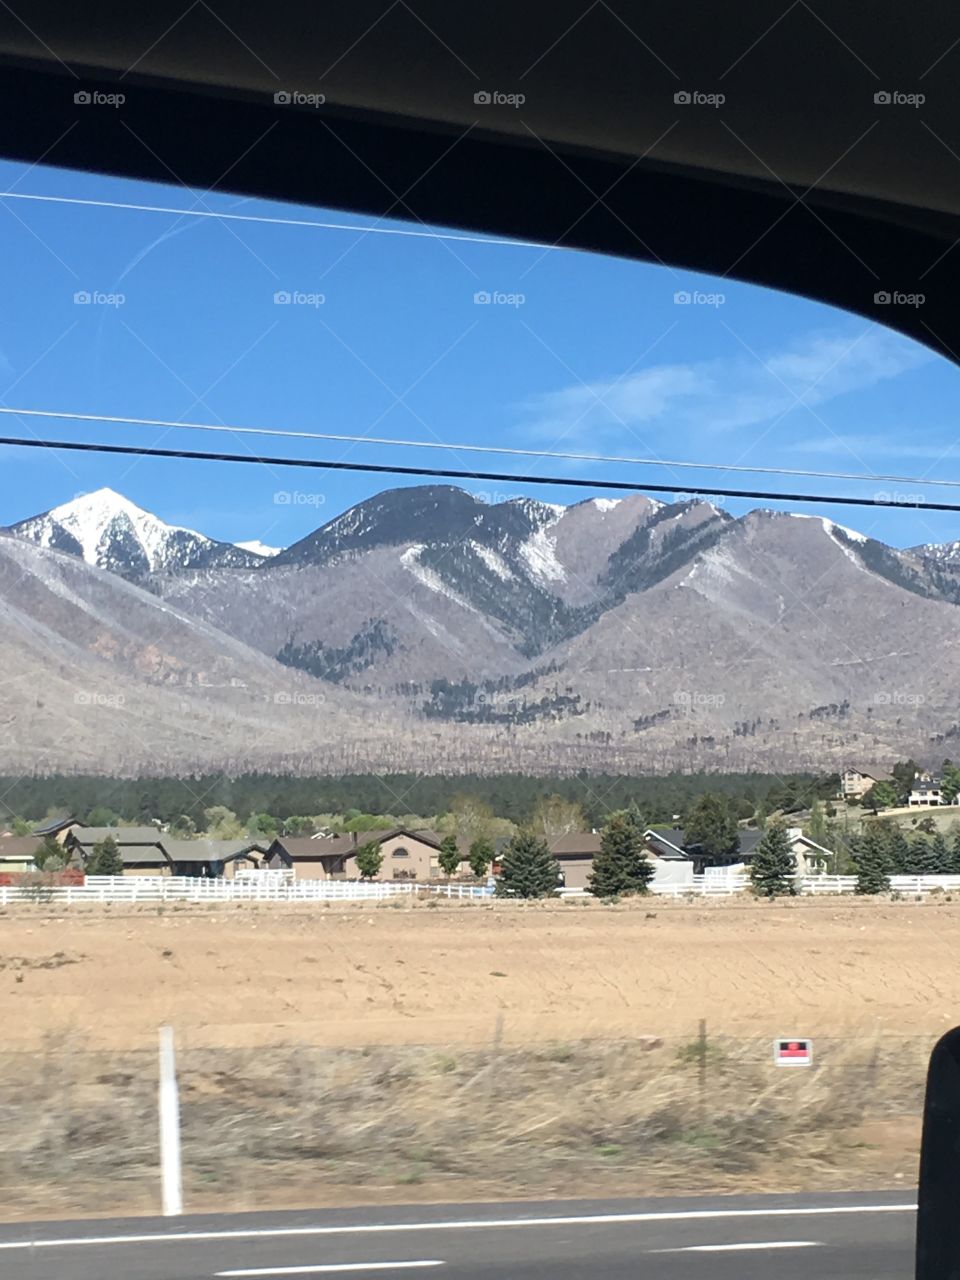 Snow topped mountains